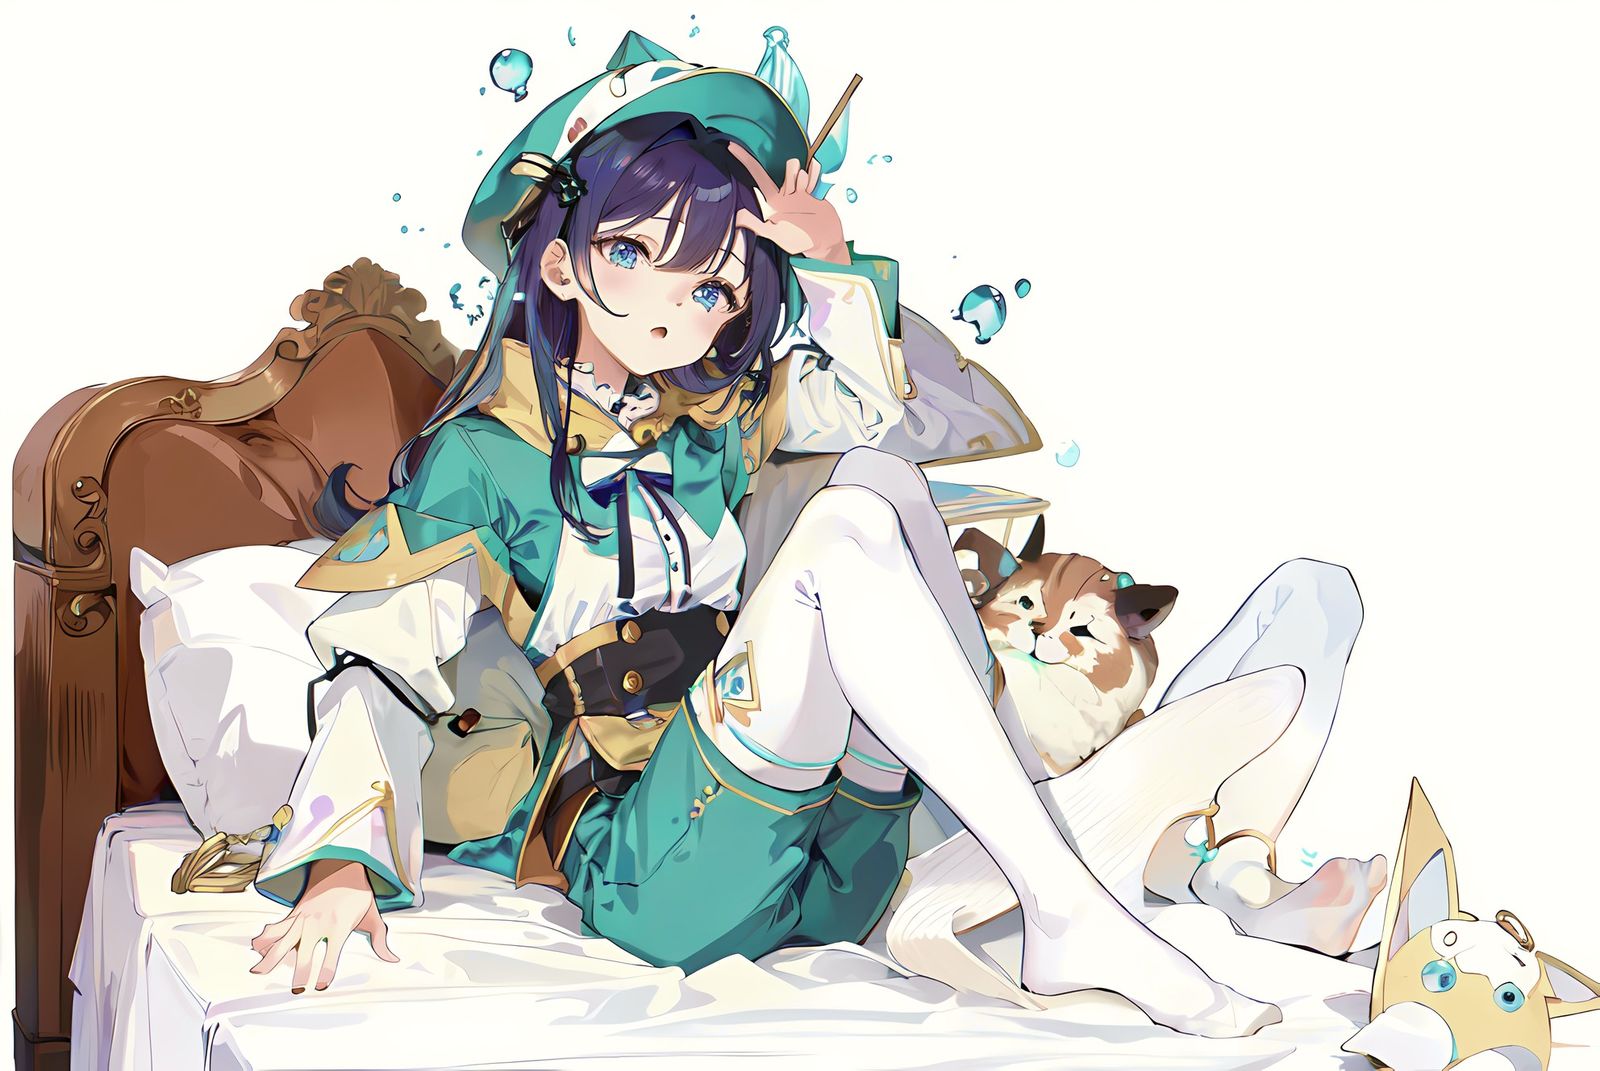 蓝眼妹子戴帽蜷缩在枕头上，充满活力的小动物在身边，白袜与绿色头饰相映成趣。插画图片壁纸